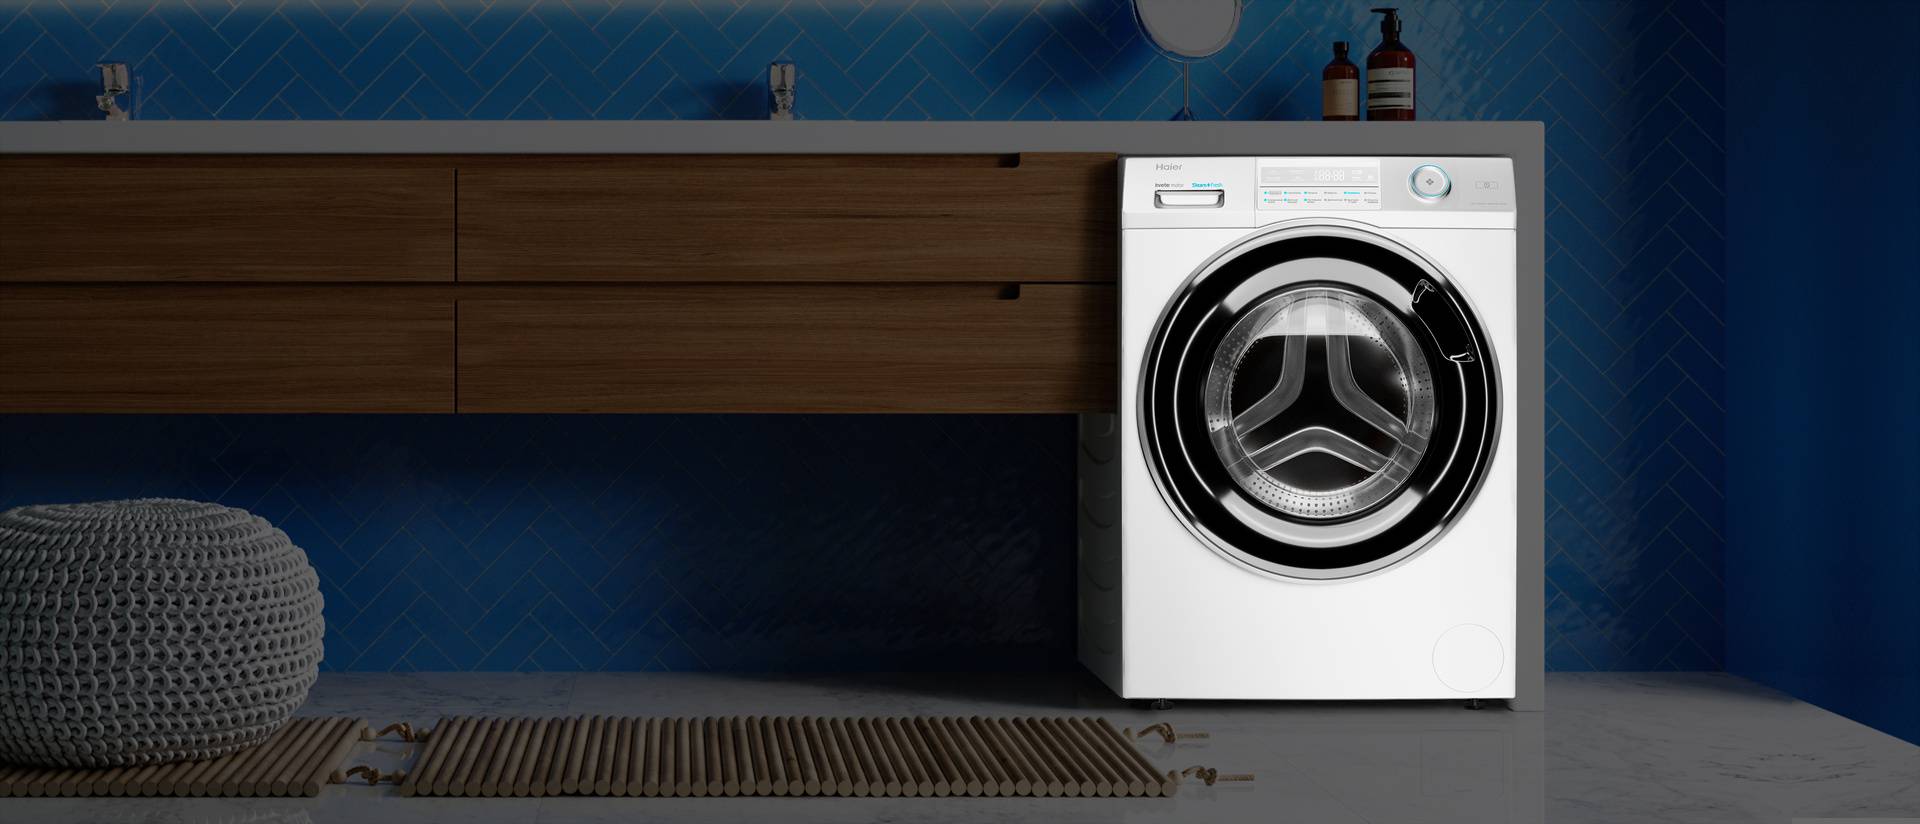 Стоит ли покупать стиральную машину фирму haier: выбор лучшей модели по отзывам